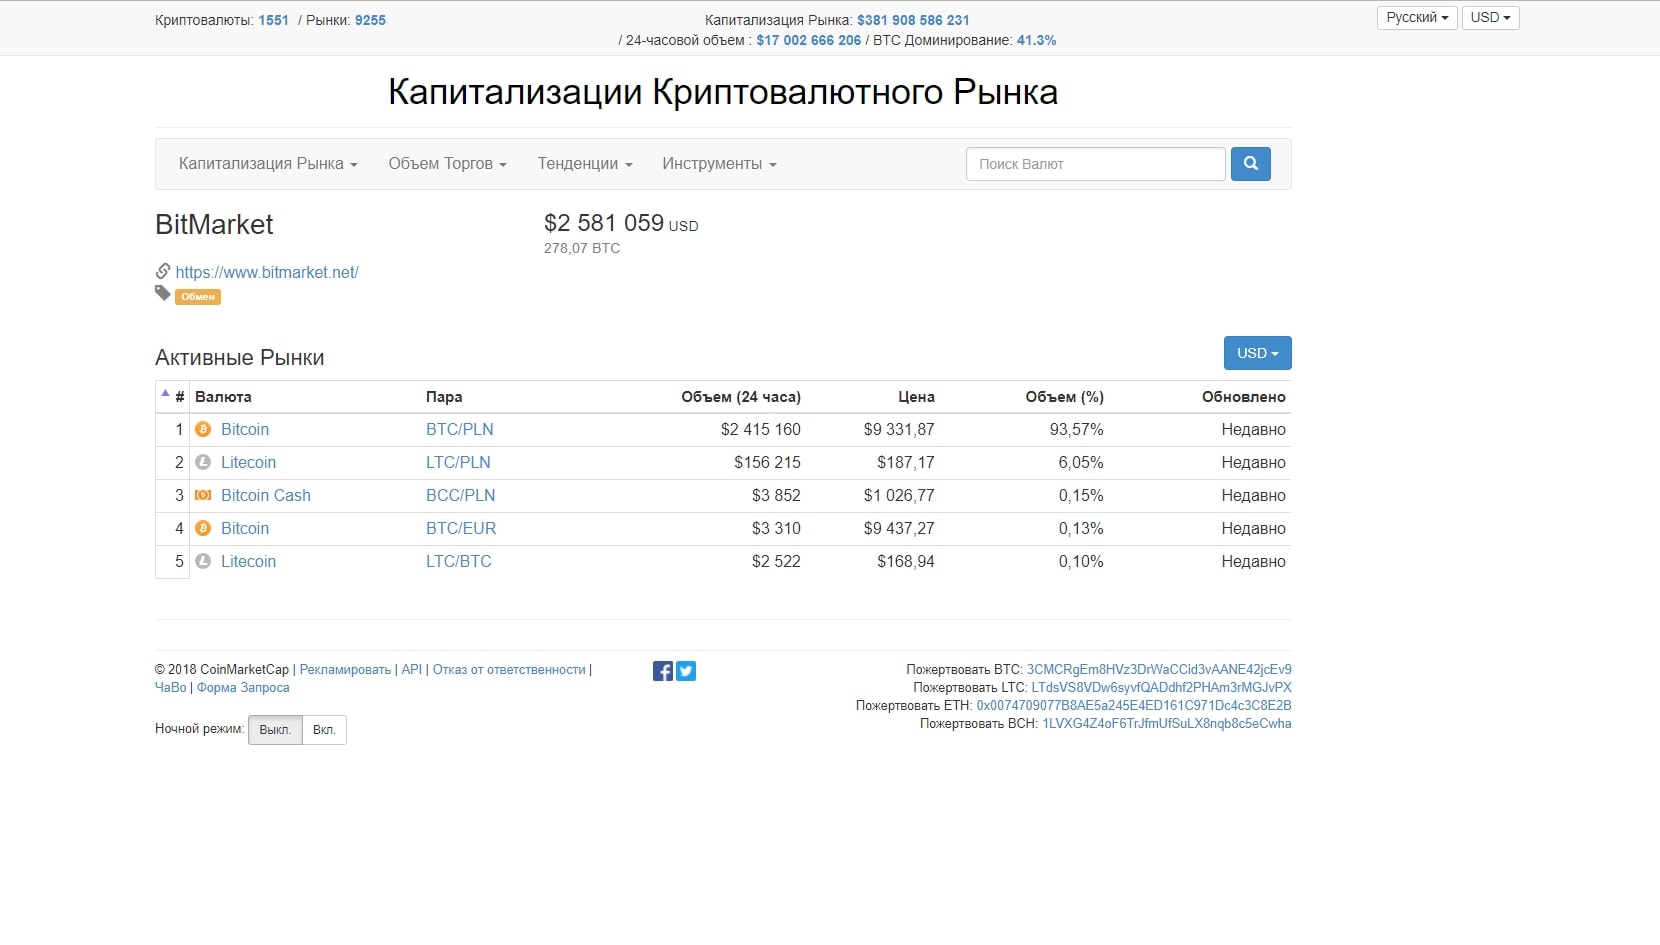 Страница биржи Bitmarket на сайте CoinMarketCap